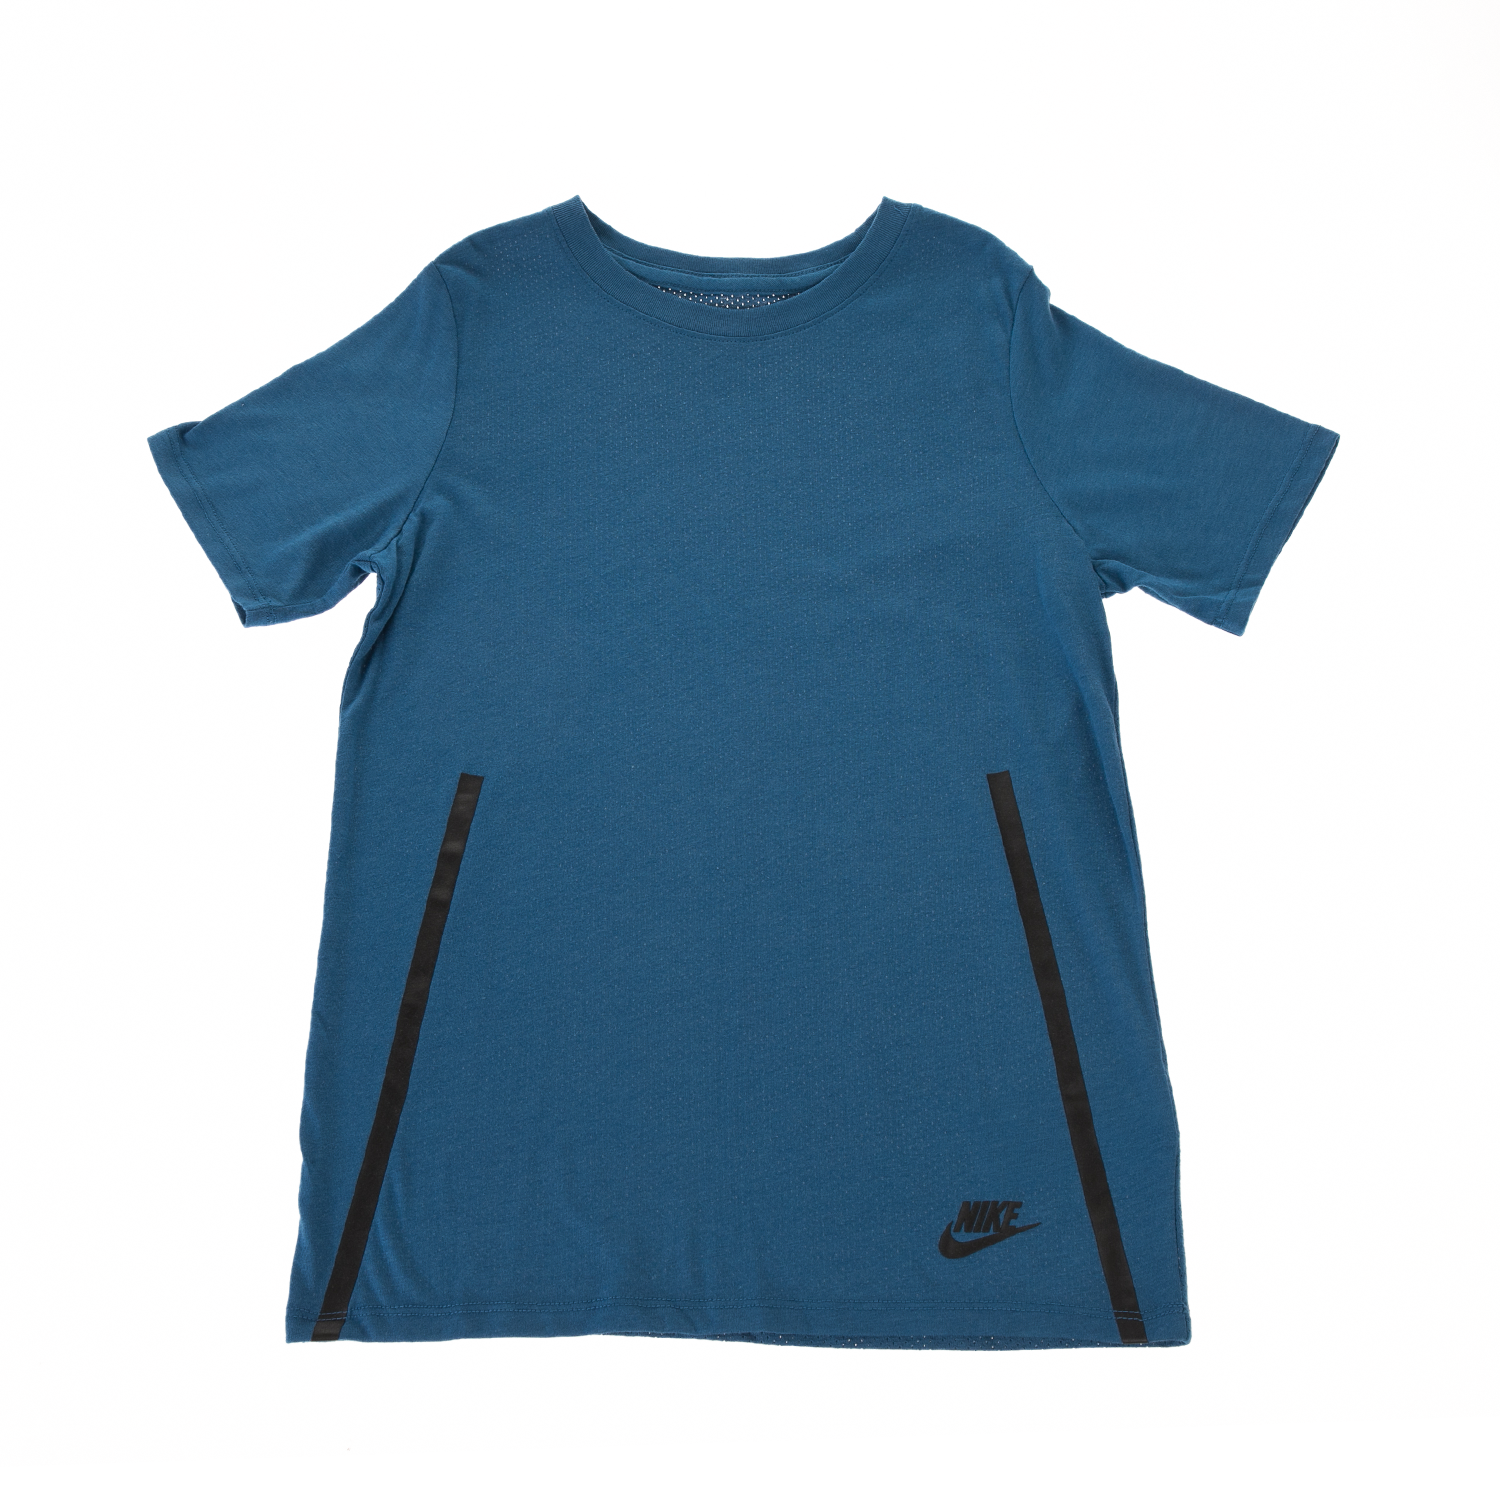 NIKE - Παιδική μπλούζα NIKE NSW TEE SS TECH μπλε Παιδικά/Boys/Ρούχα/Αθλητικά